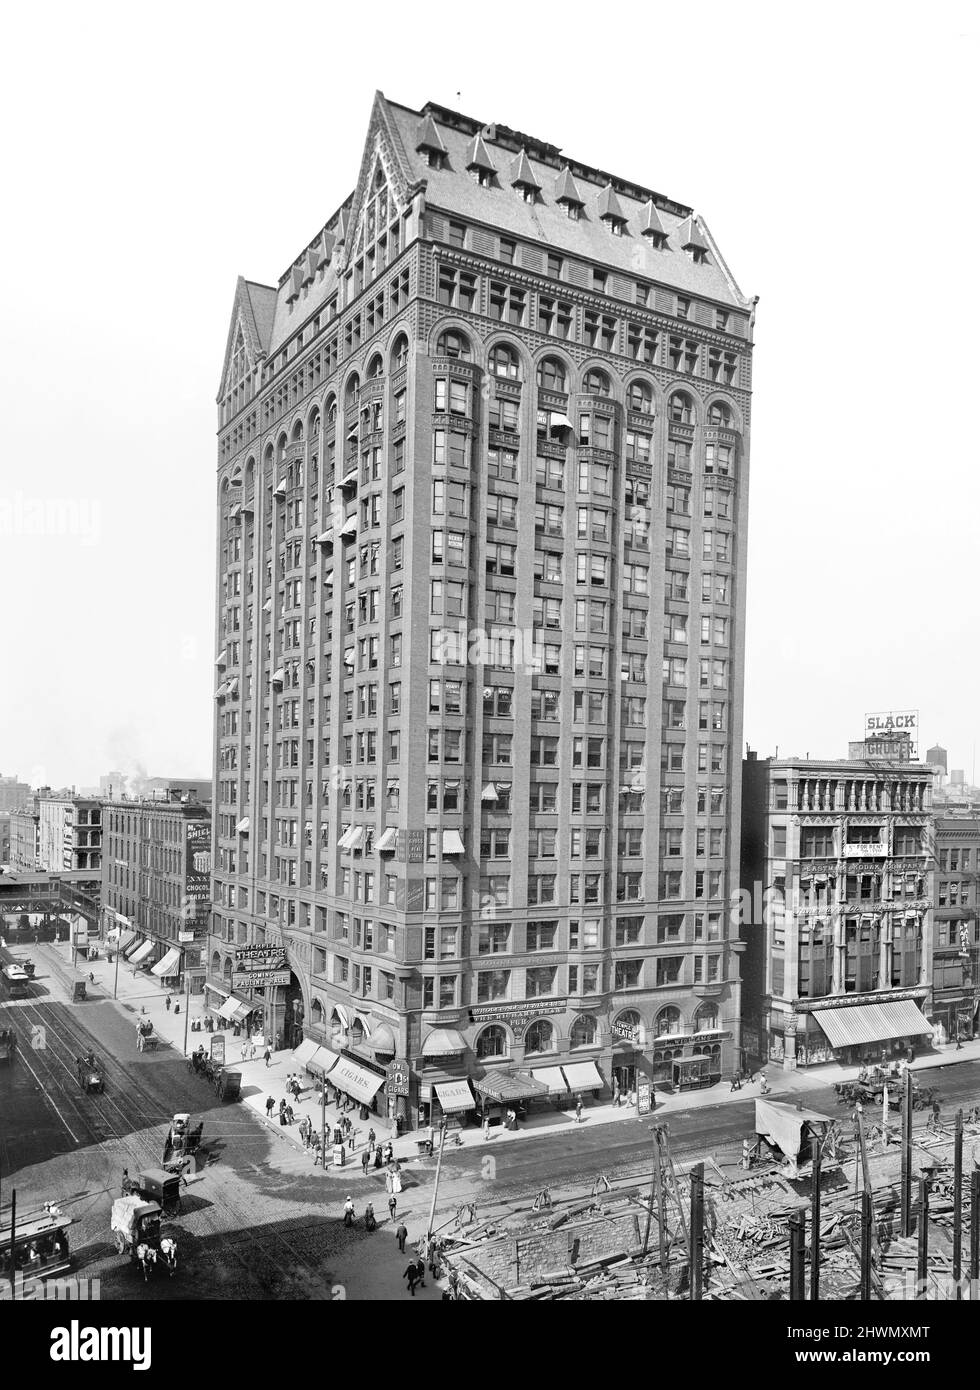 Masonic Temple Building, à l'angle de Randolph et State Streets, Chicago, Illinois, États-Unis, Detroit Publishing Company, 1901 Banque D'Images